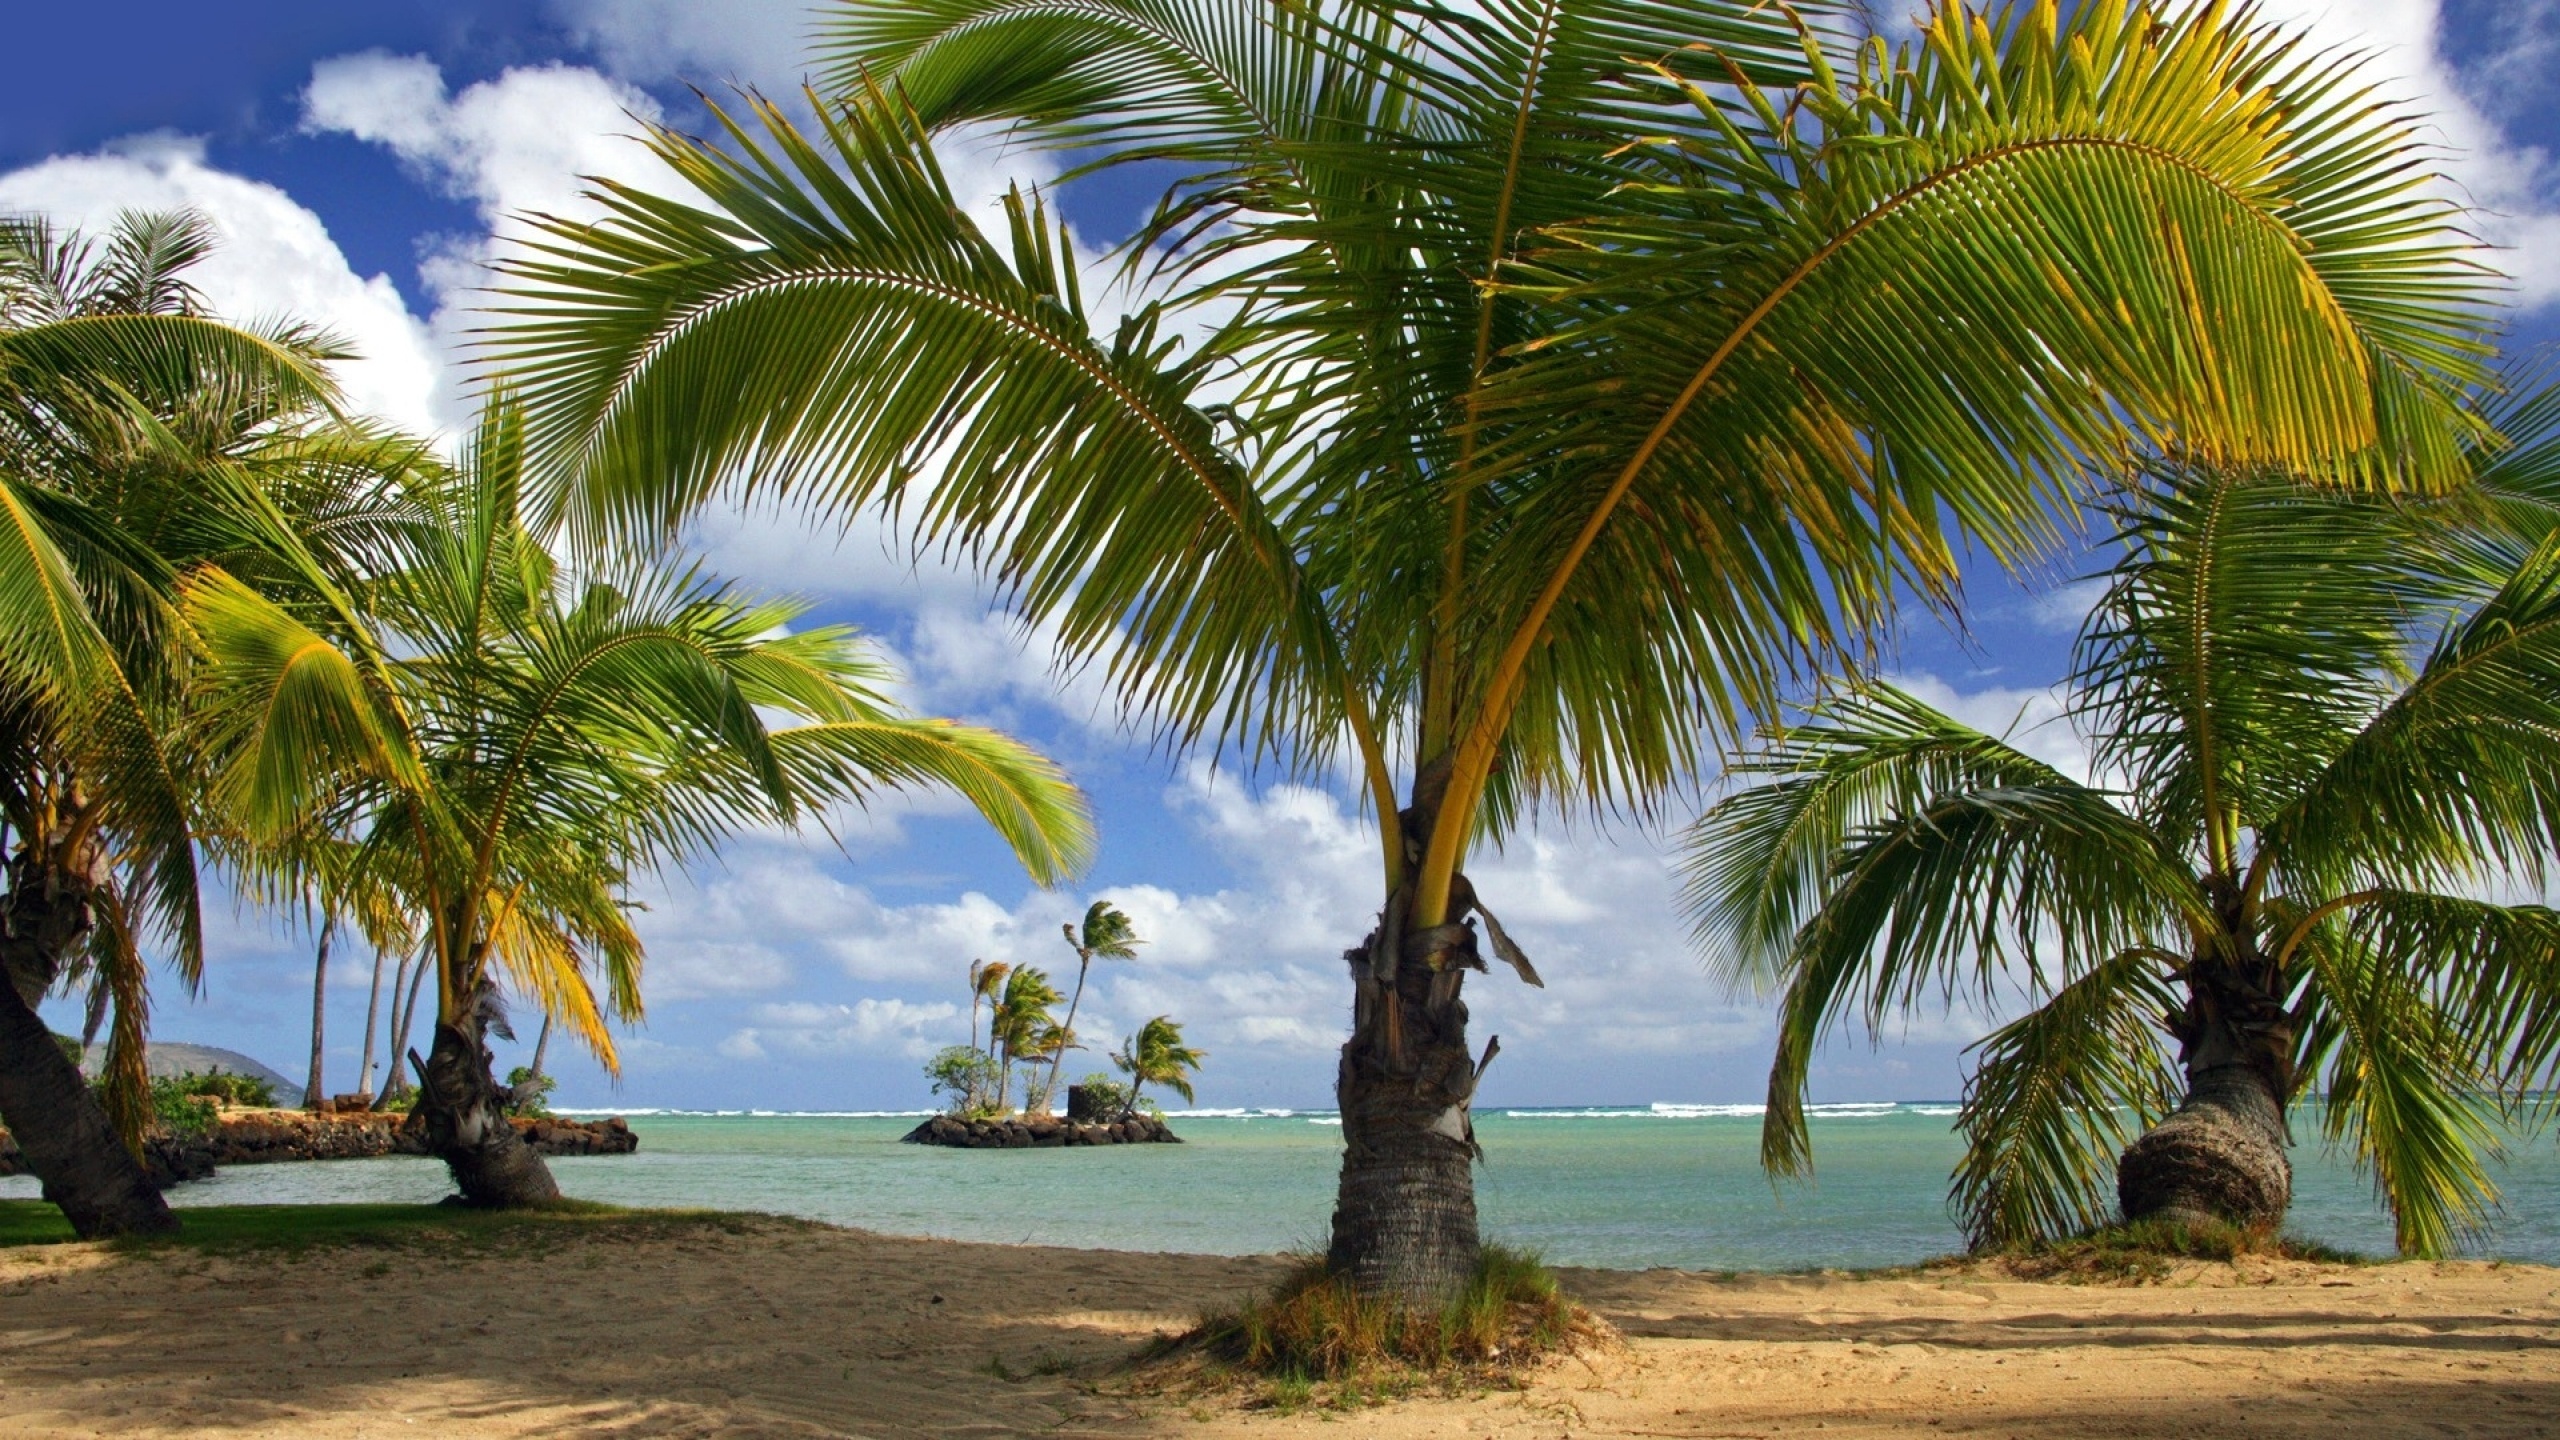 Скачать обои бесплатно Пляж, Океан, Пальма, Тропический, Земля/природа картинка на рабочий стол ПК